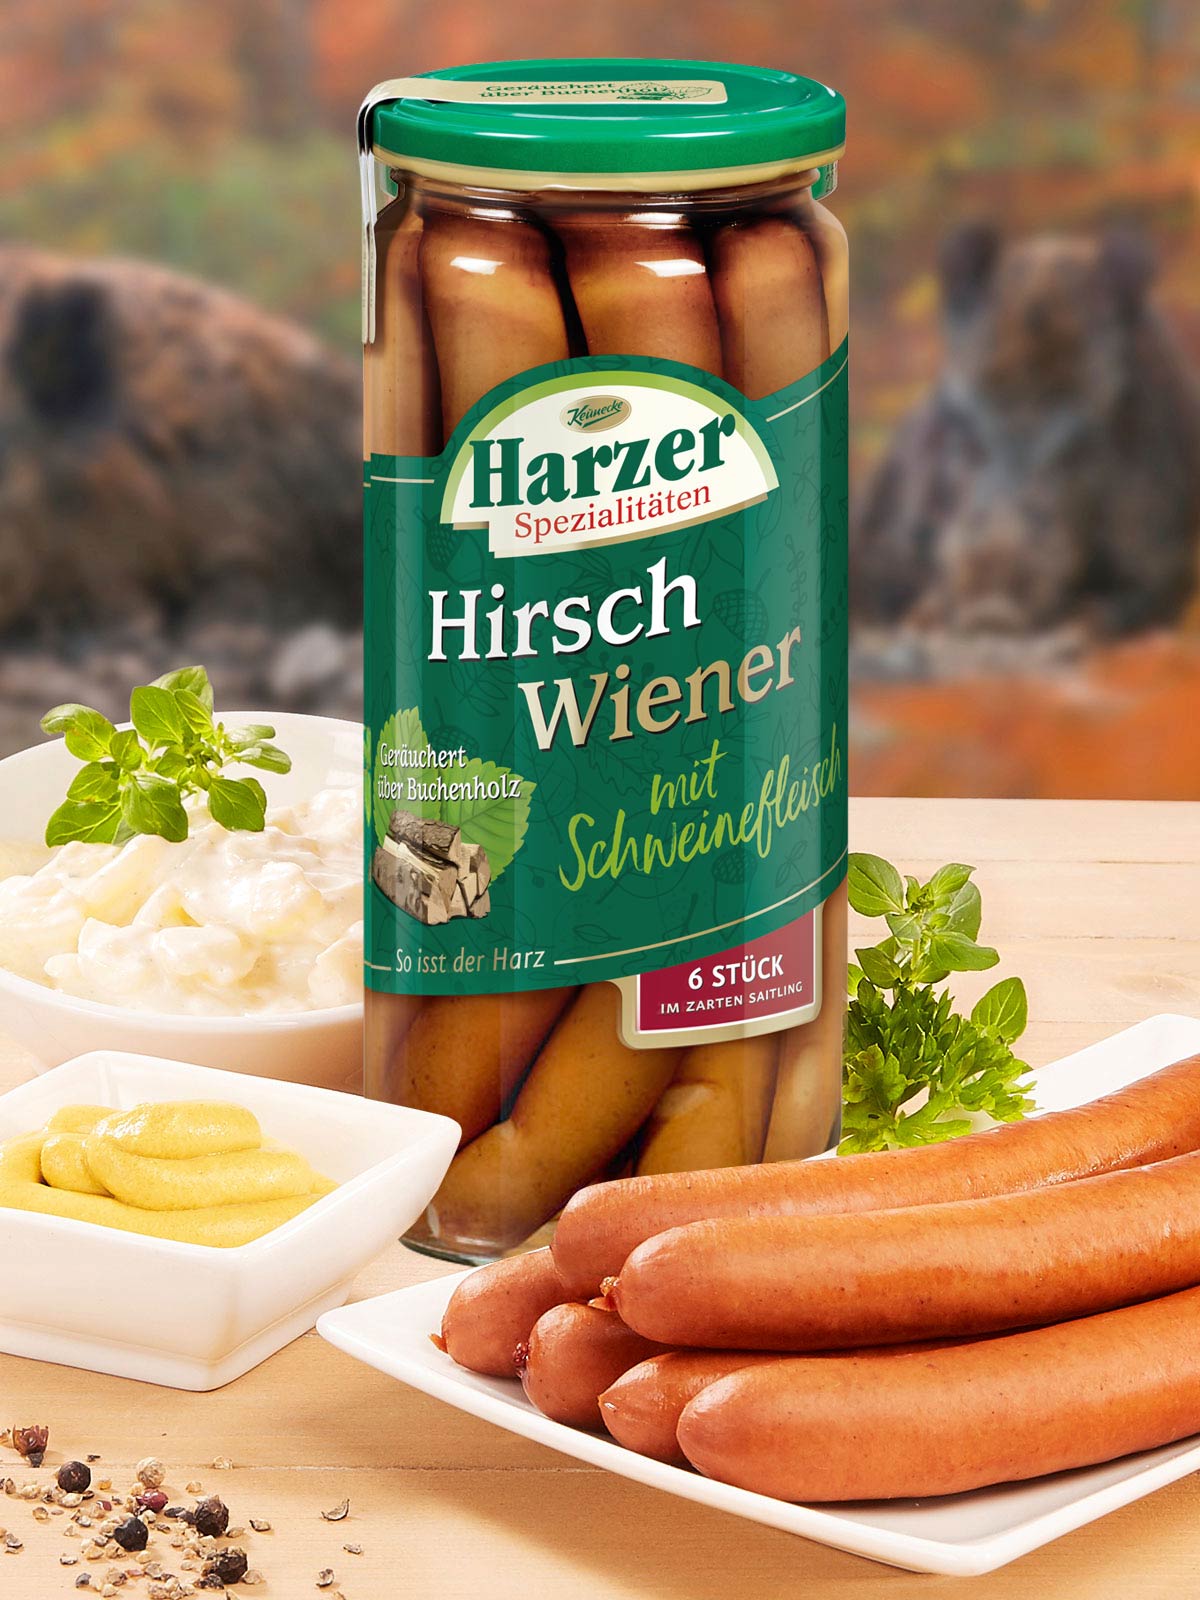 Harzer Hirsch Wiener